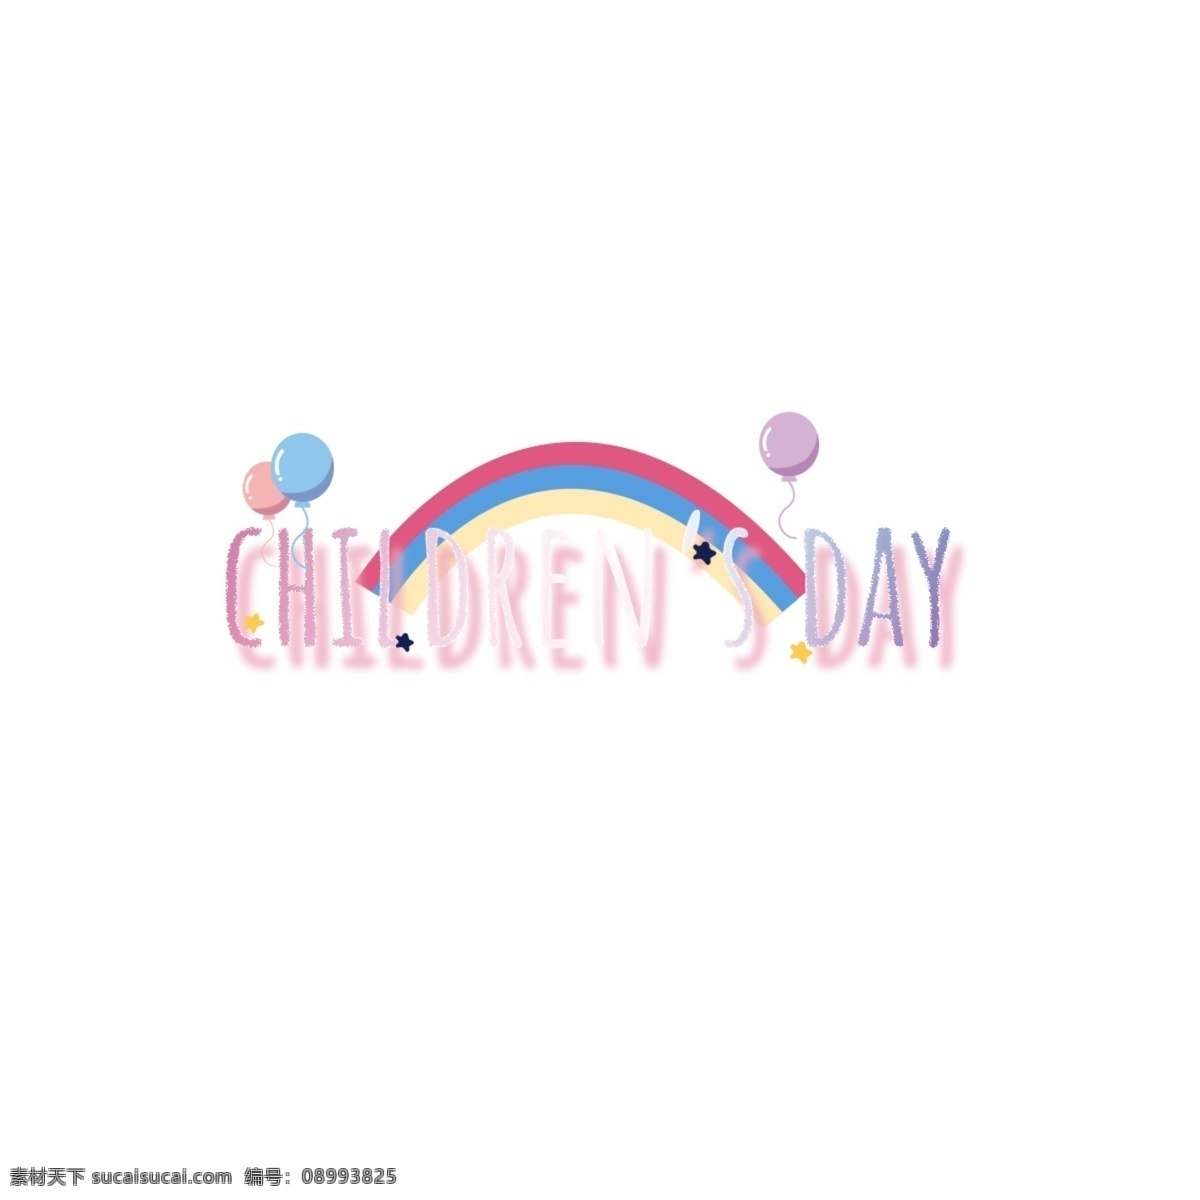 彩虹 闪亮 儿童节 字体 孩子们的一天 光 粉 星 书法 创意字体